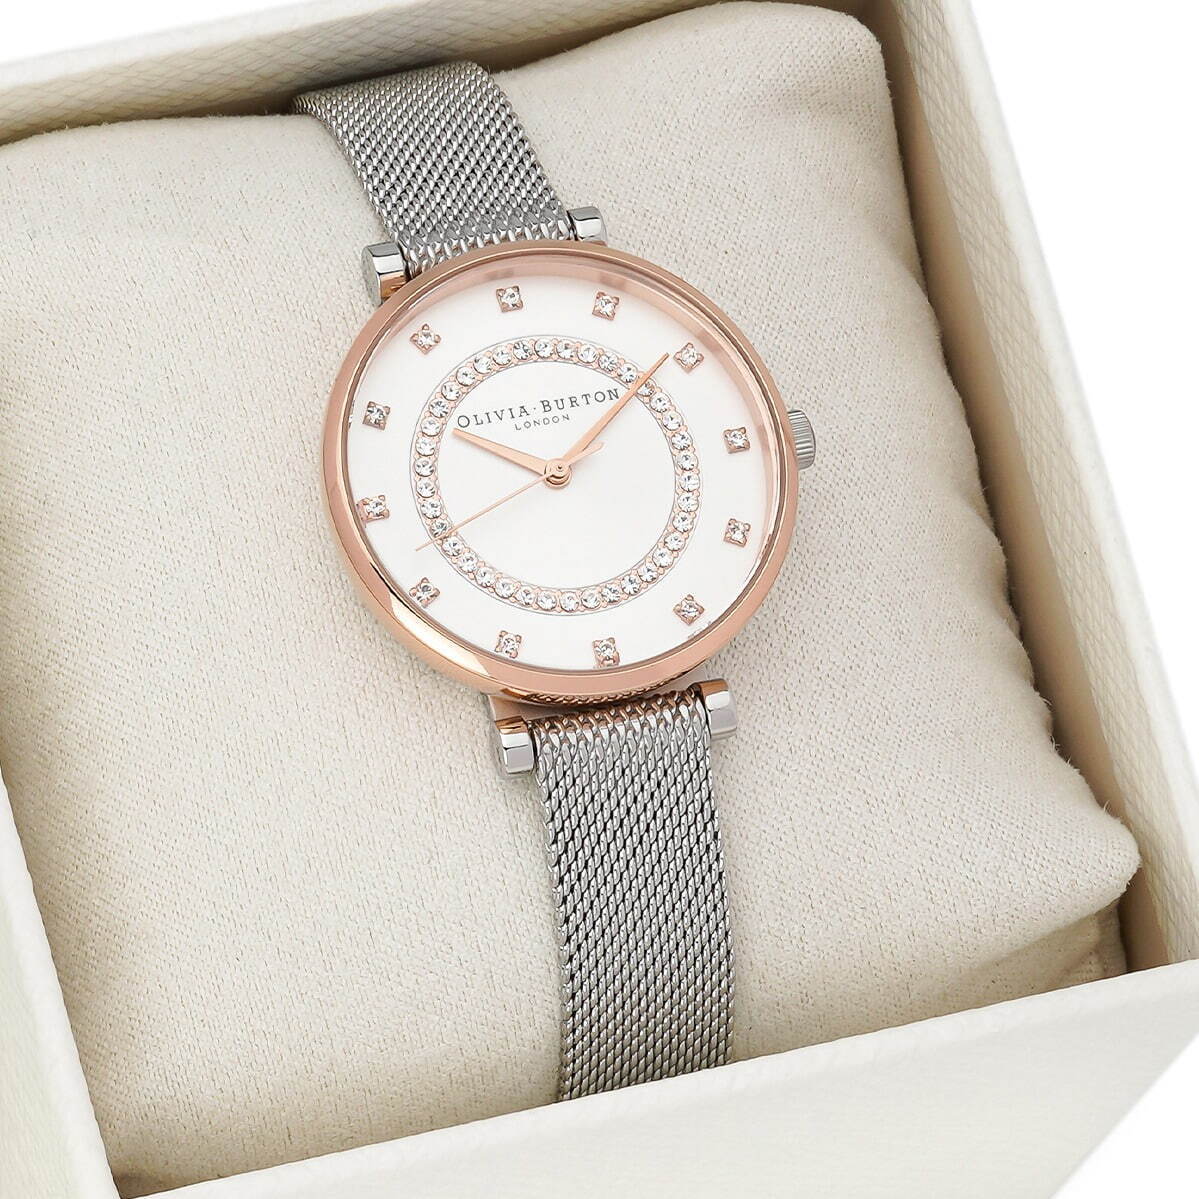 オリビア・バートンの23年クリスマス、“クリスタル煌めく”腕時計